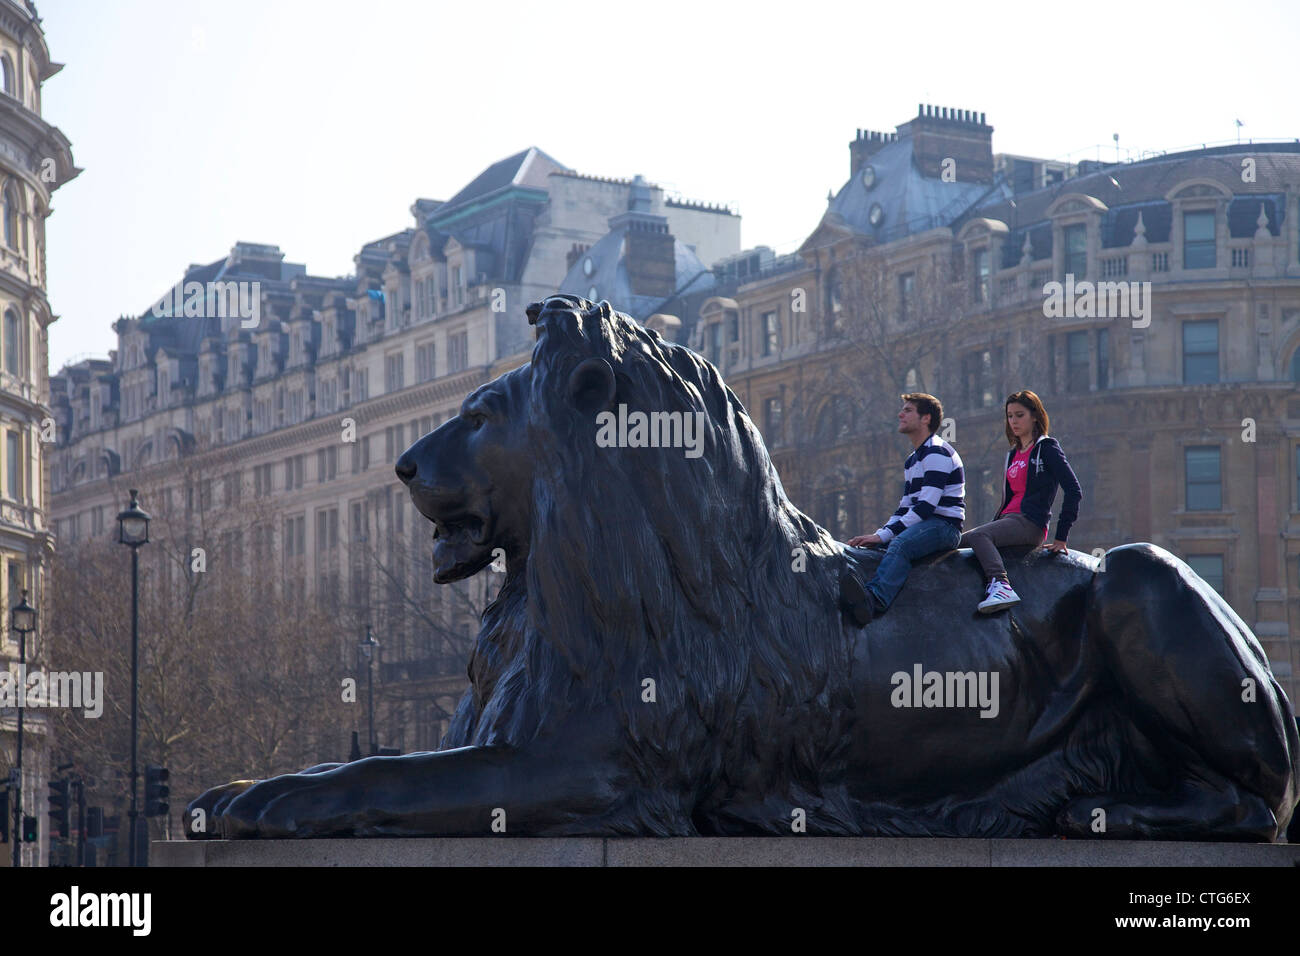 Ragazzi sul dorso di un leone di bronzo statua, Trafagar Square, Londra, Inghilterra, UK, Regno Unito, Isole britanniche, GB Foto Stock